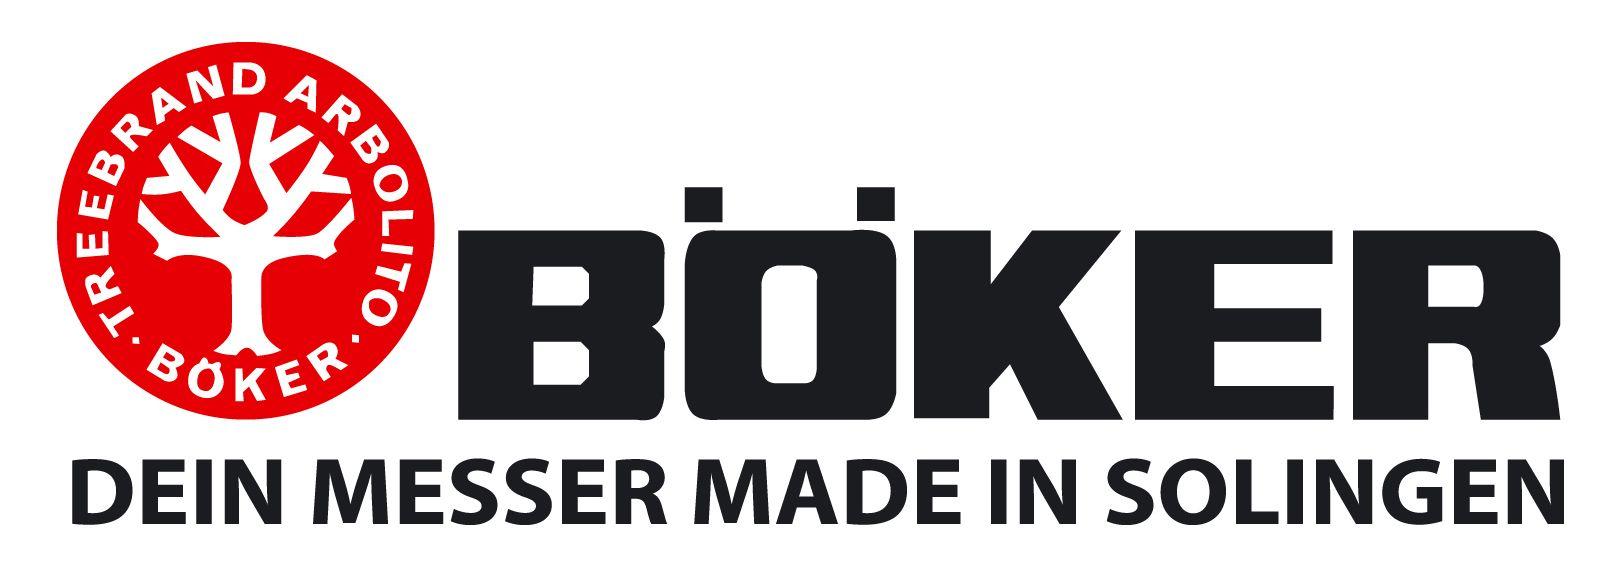 Boker Logo - BOKER peiliai | Prekių ženklai / Brands | Logo sign, Logos, Axe